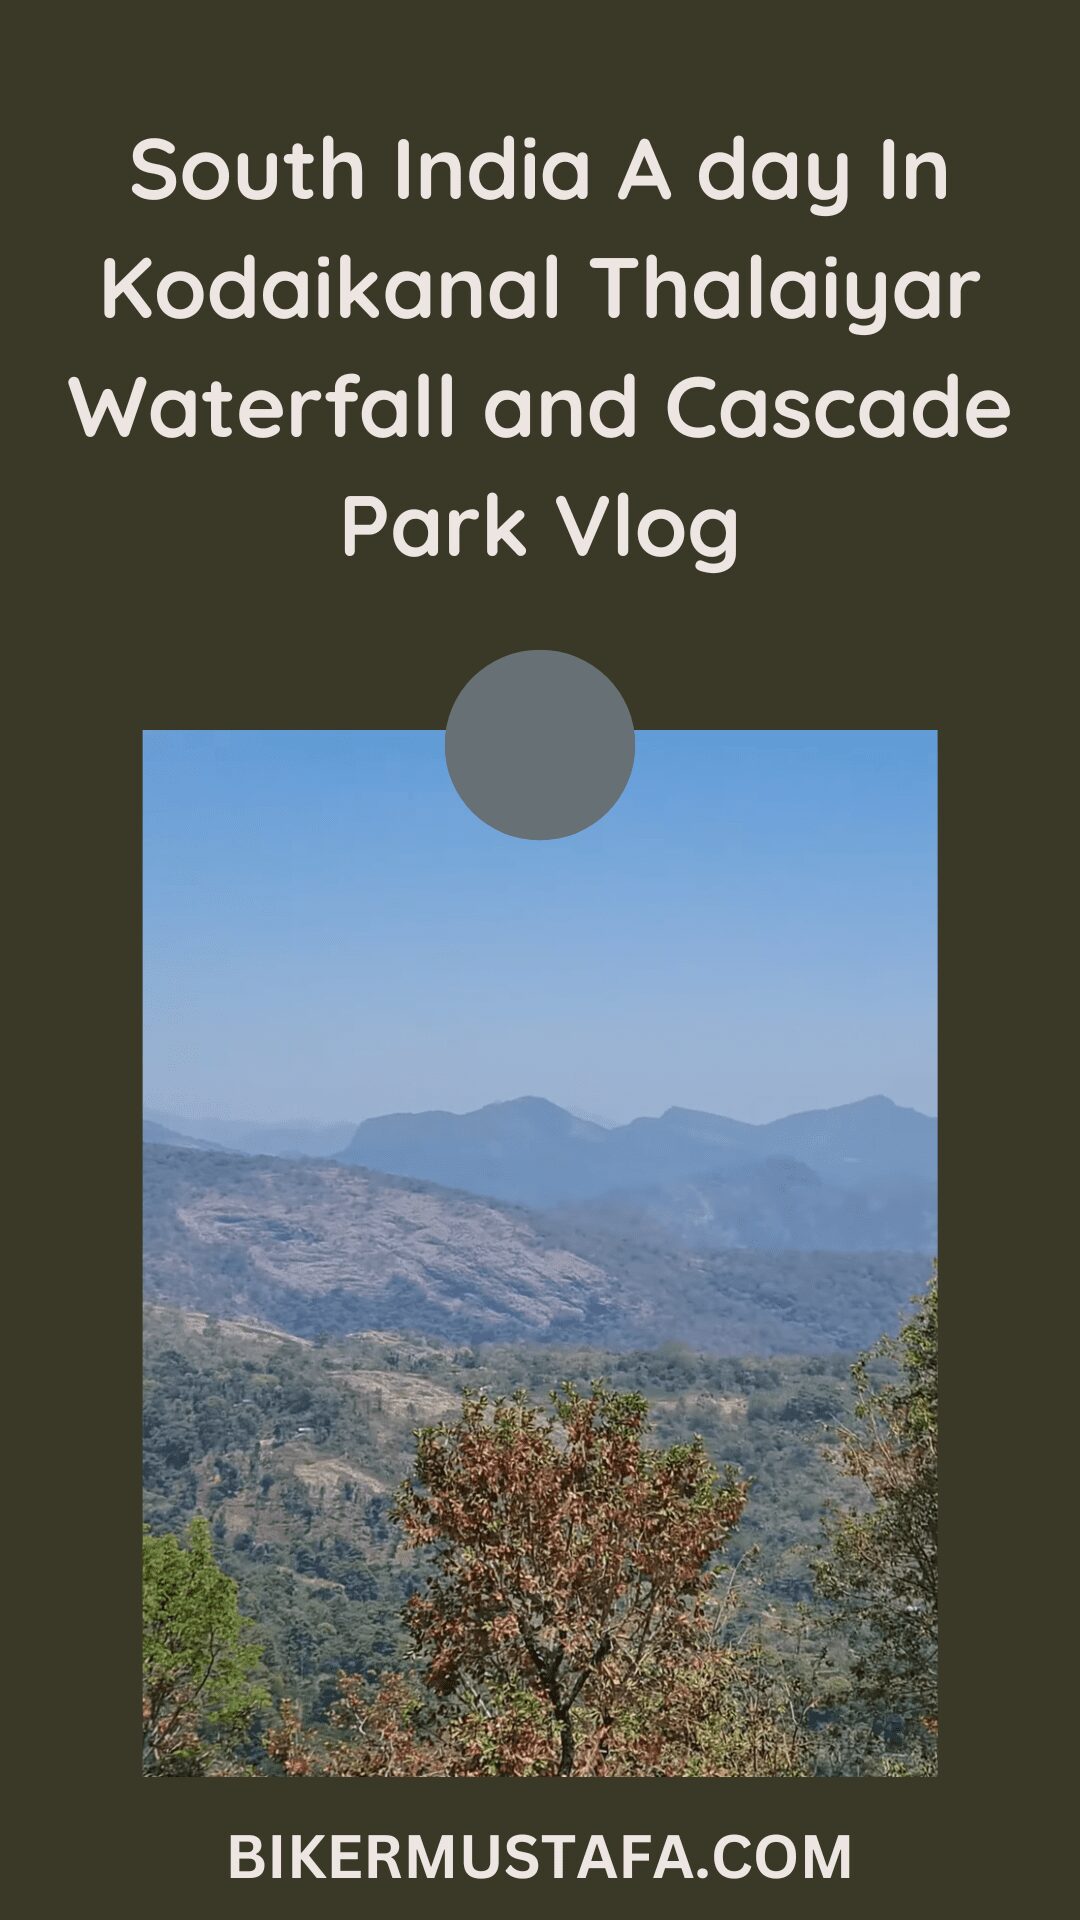 South India A day In Kodaikanal Thalaiyar Waterfall and Cascade Park Vlog